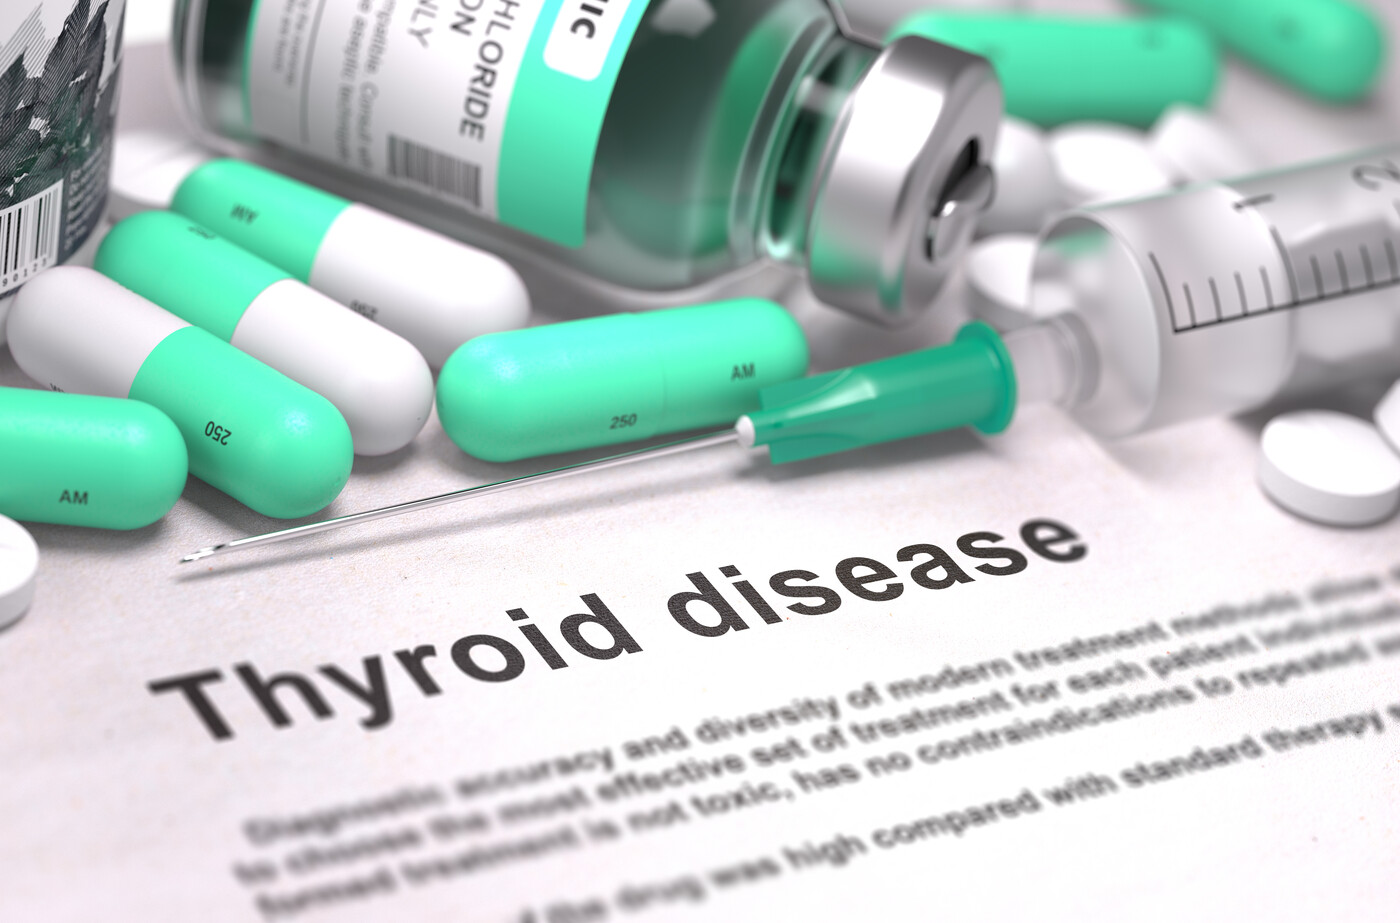 Thyroid disease awareness